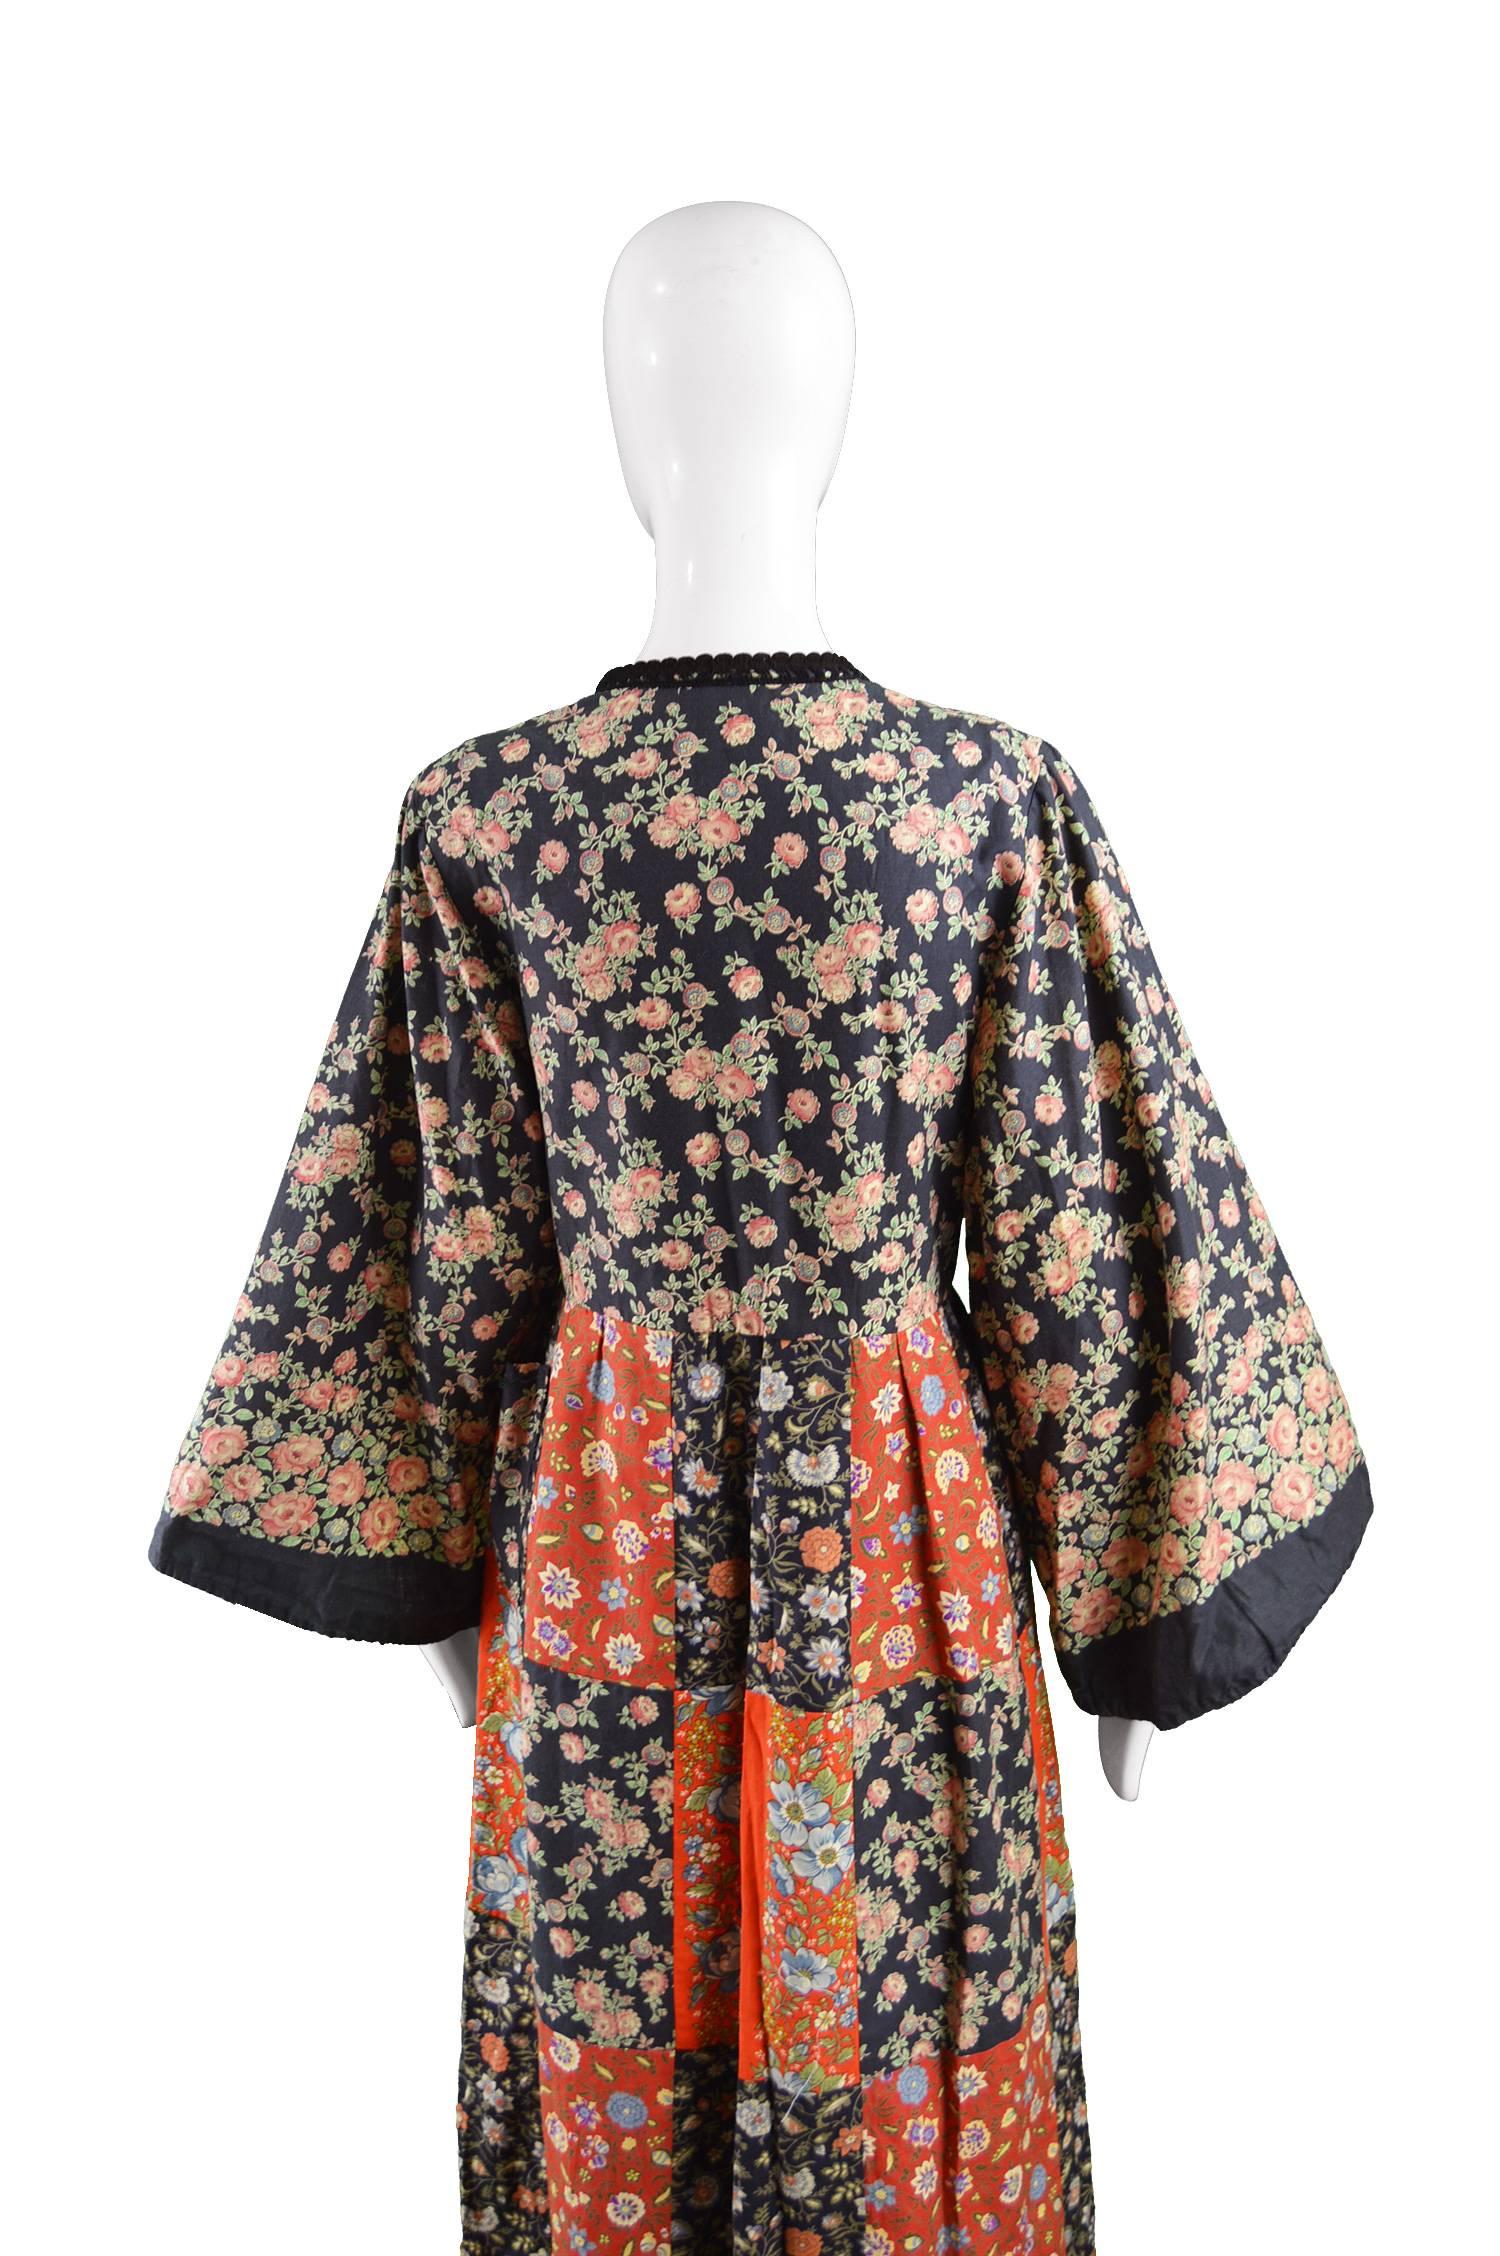 Angela Gore Vintage Patchwork Floral Print Cotton Maxi Kimono Dress, 1970s For Sale 1